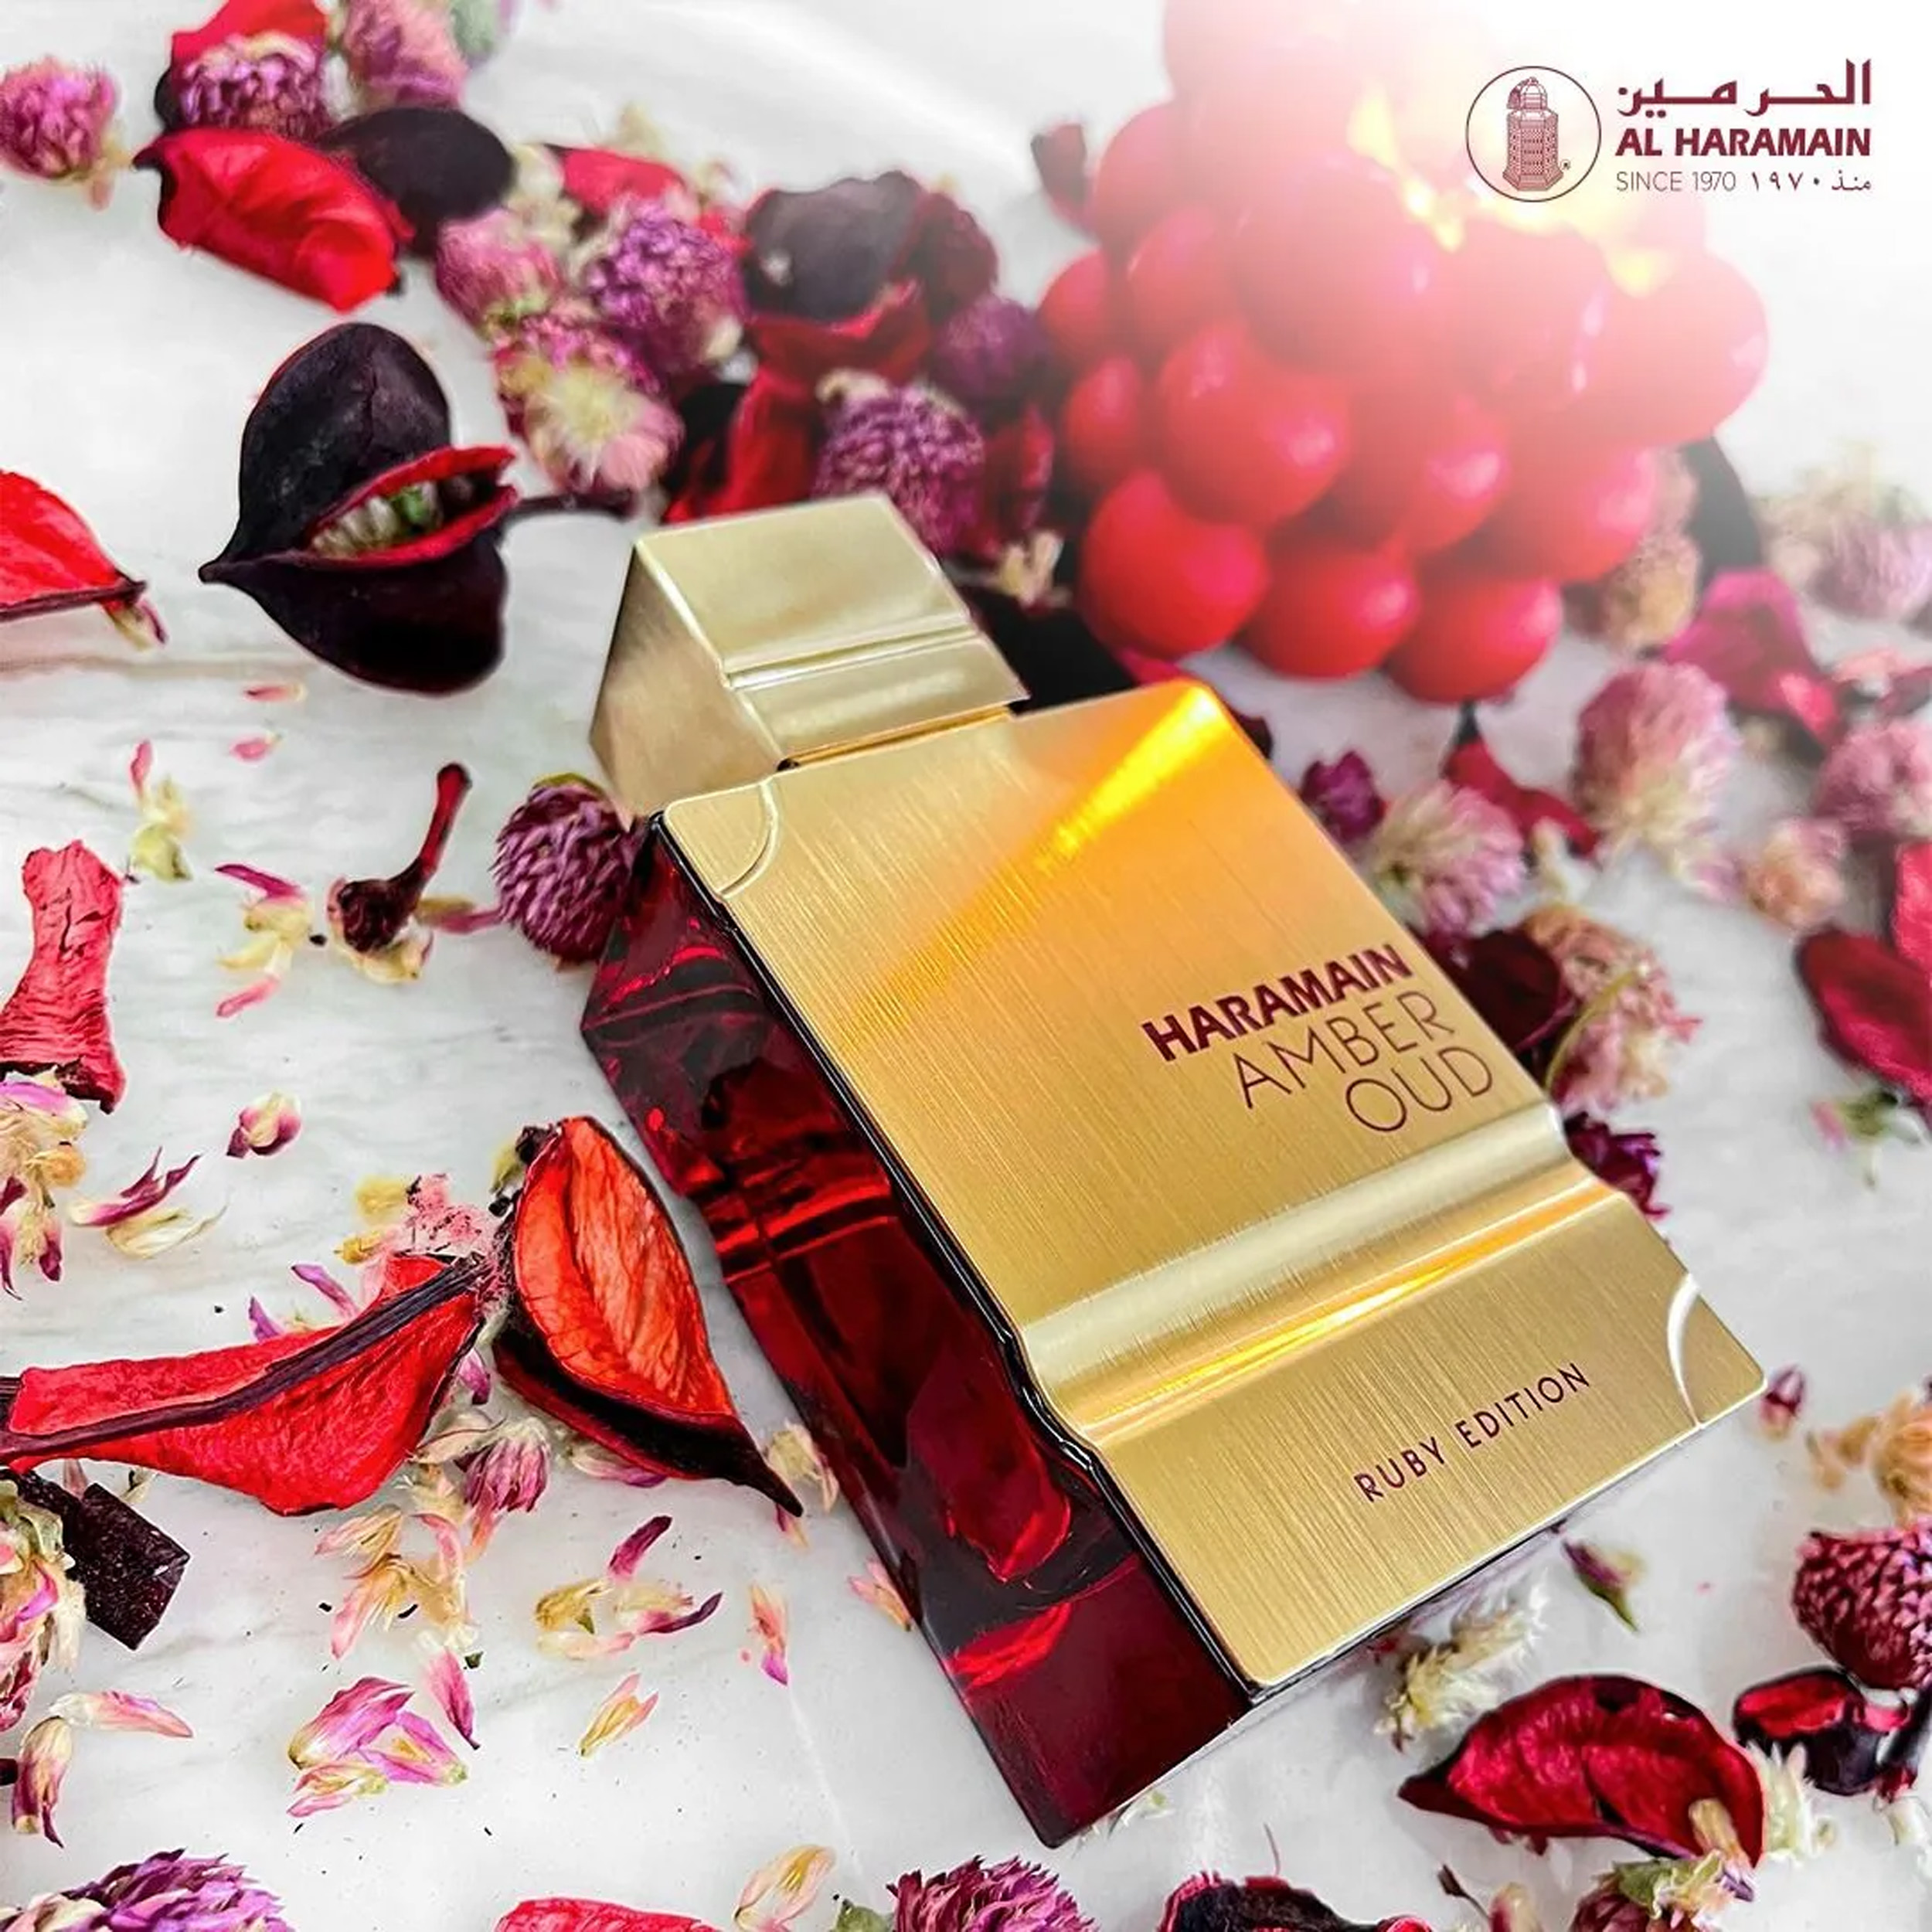 Amber Oud Ruby Edition Al Haramain Perfumes (Replica Con Fragancia Importada)- Mujer y Hombre 